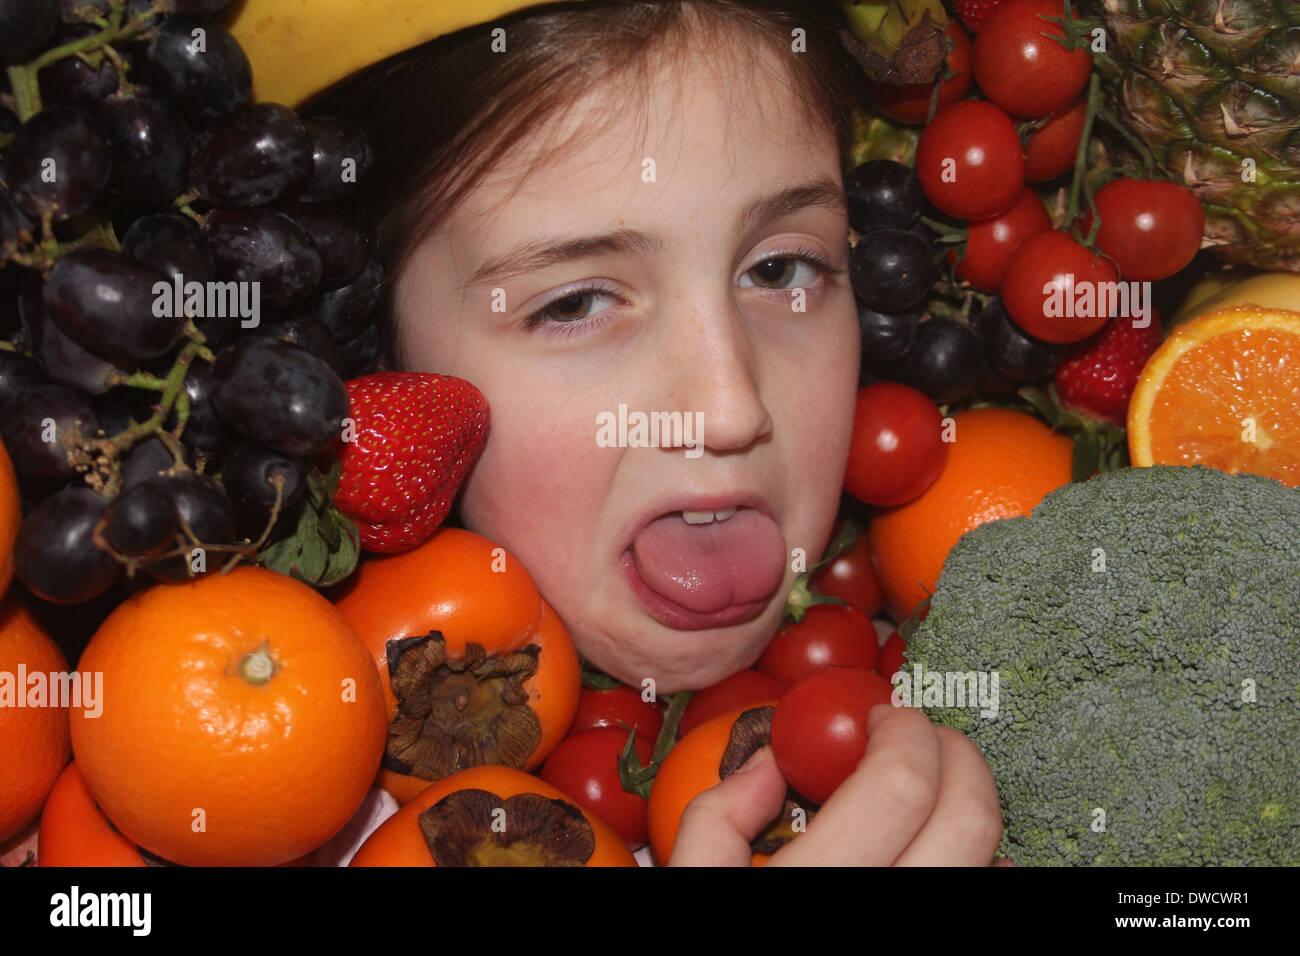 Los jóvenes caucásicos cara de la niña rodeada de frutales y hortalizas no disfrutar comiendo healthly , cinco al día, Inglaterra, Reino Unido. Foto de stock